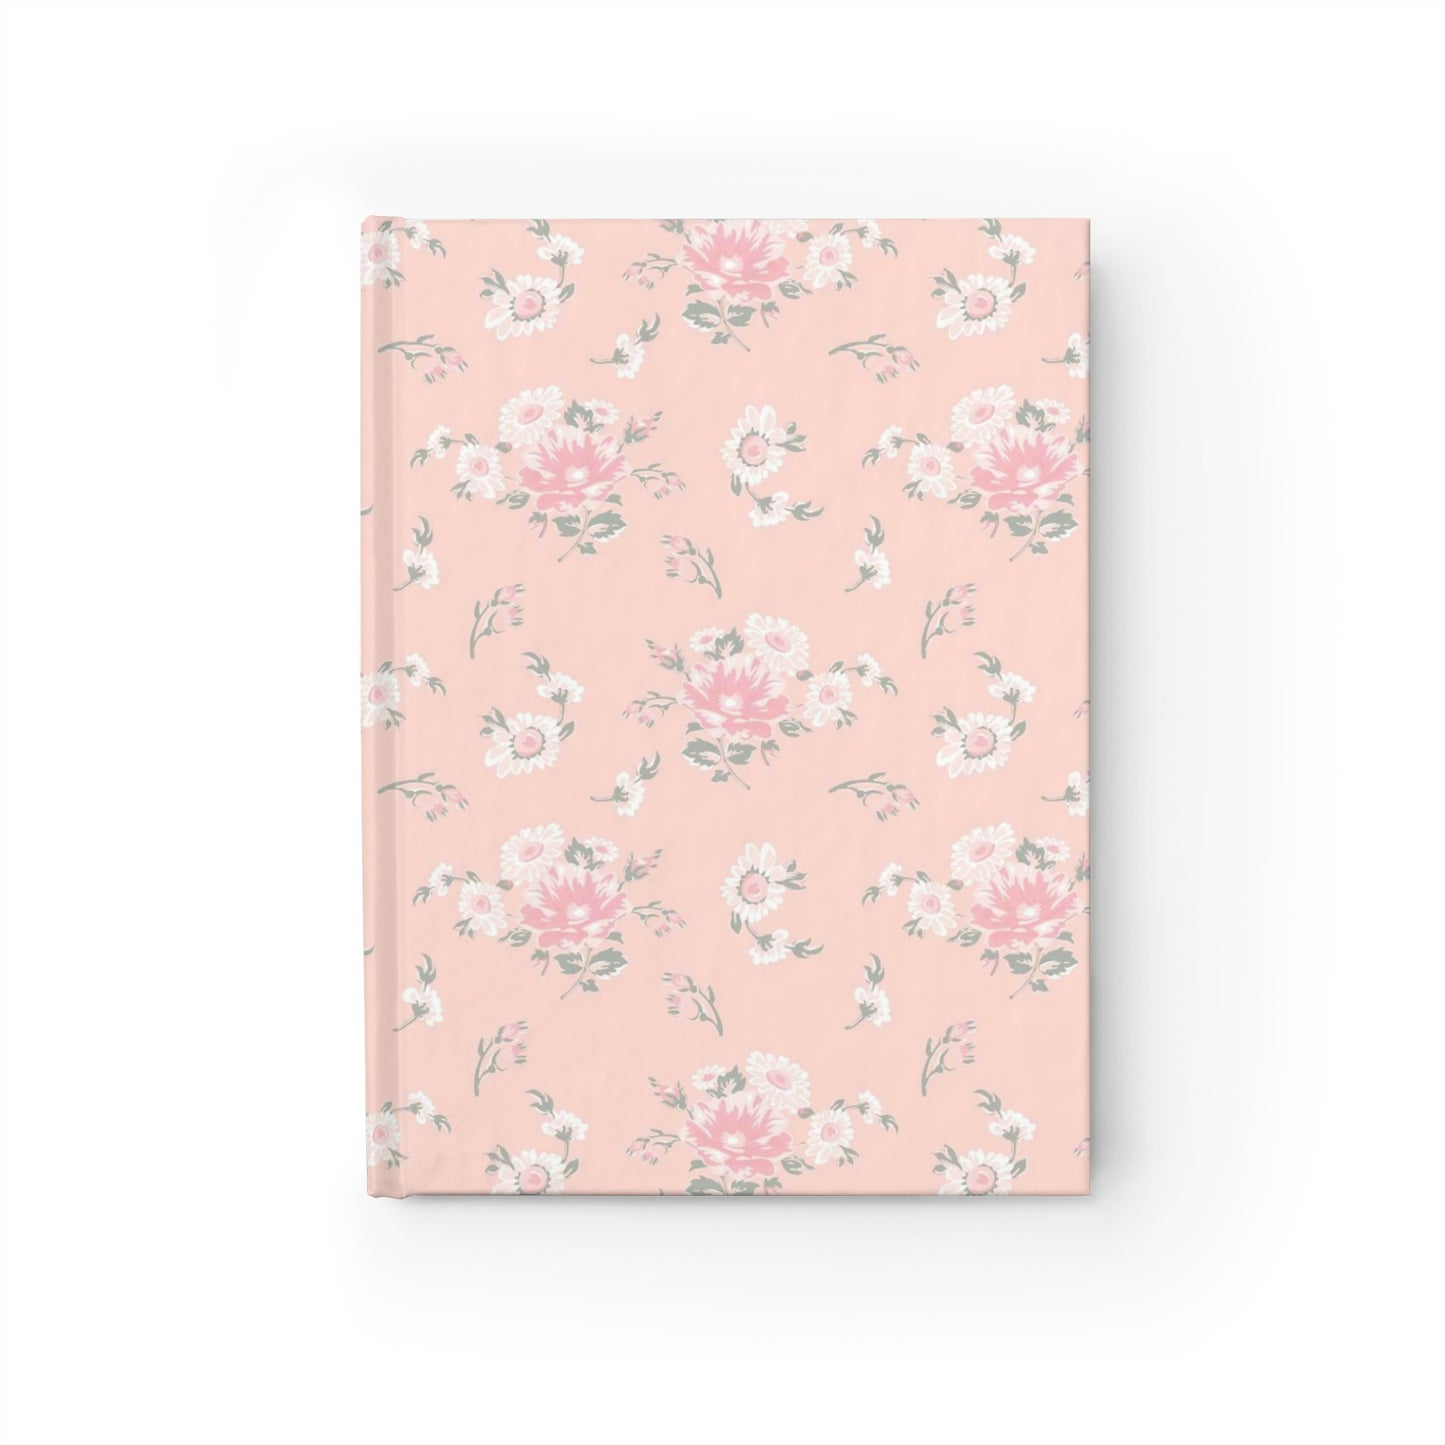 Spring Floral Journal - Ruled Line